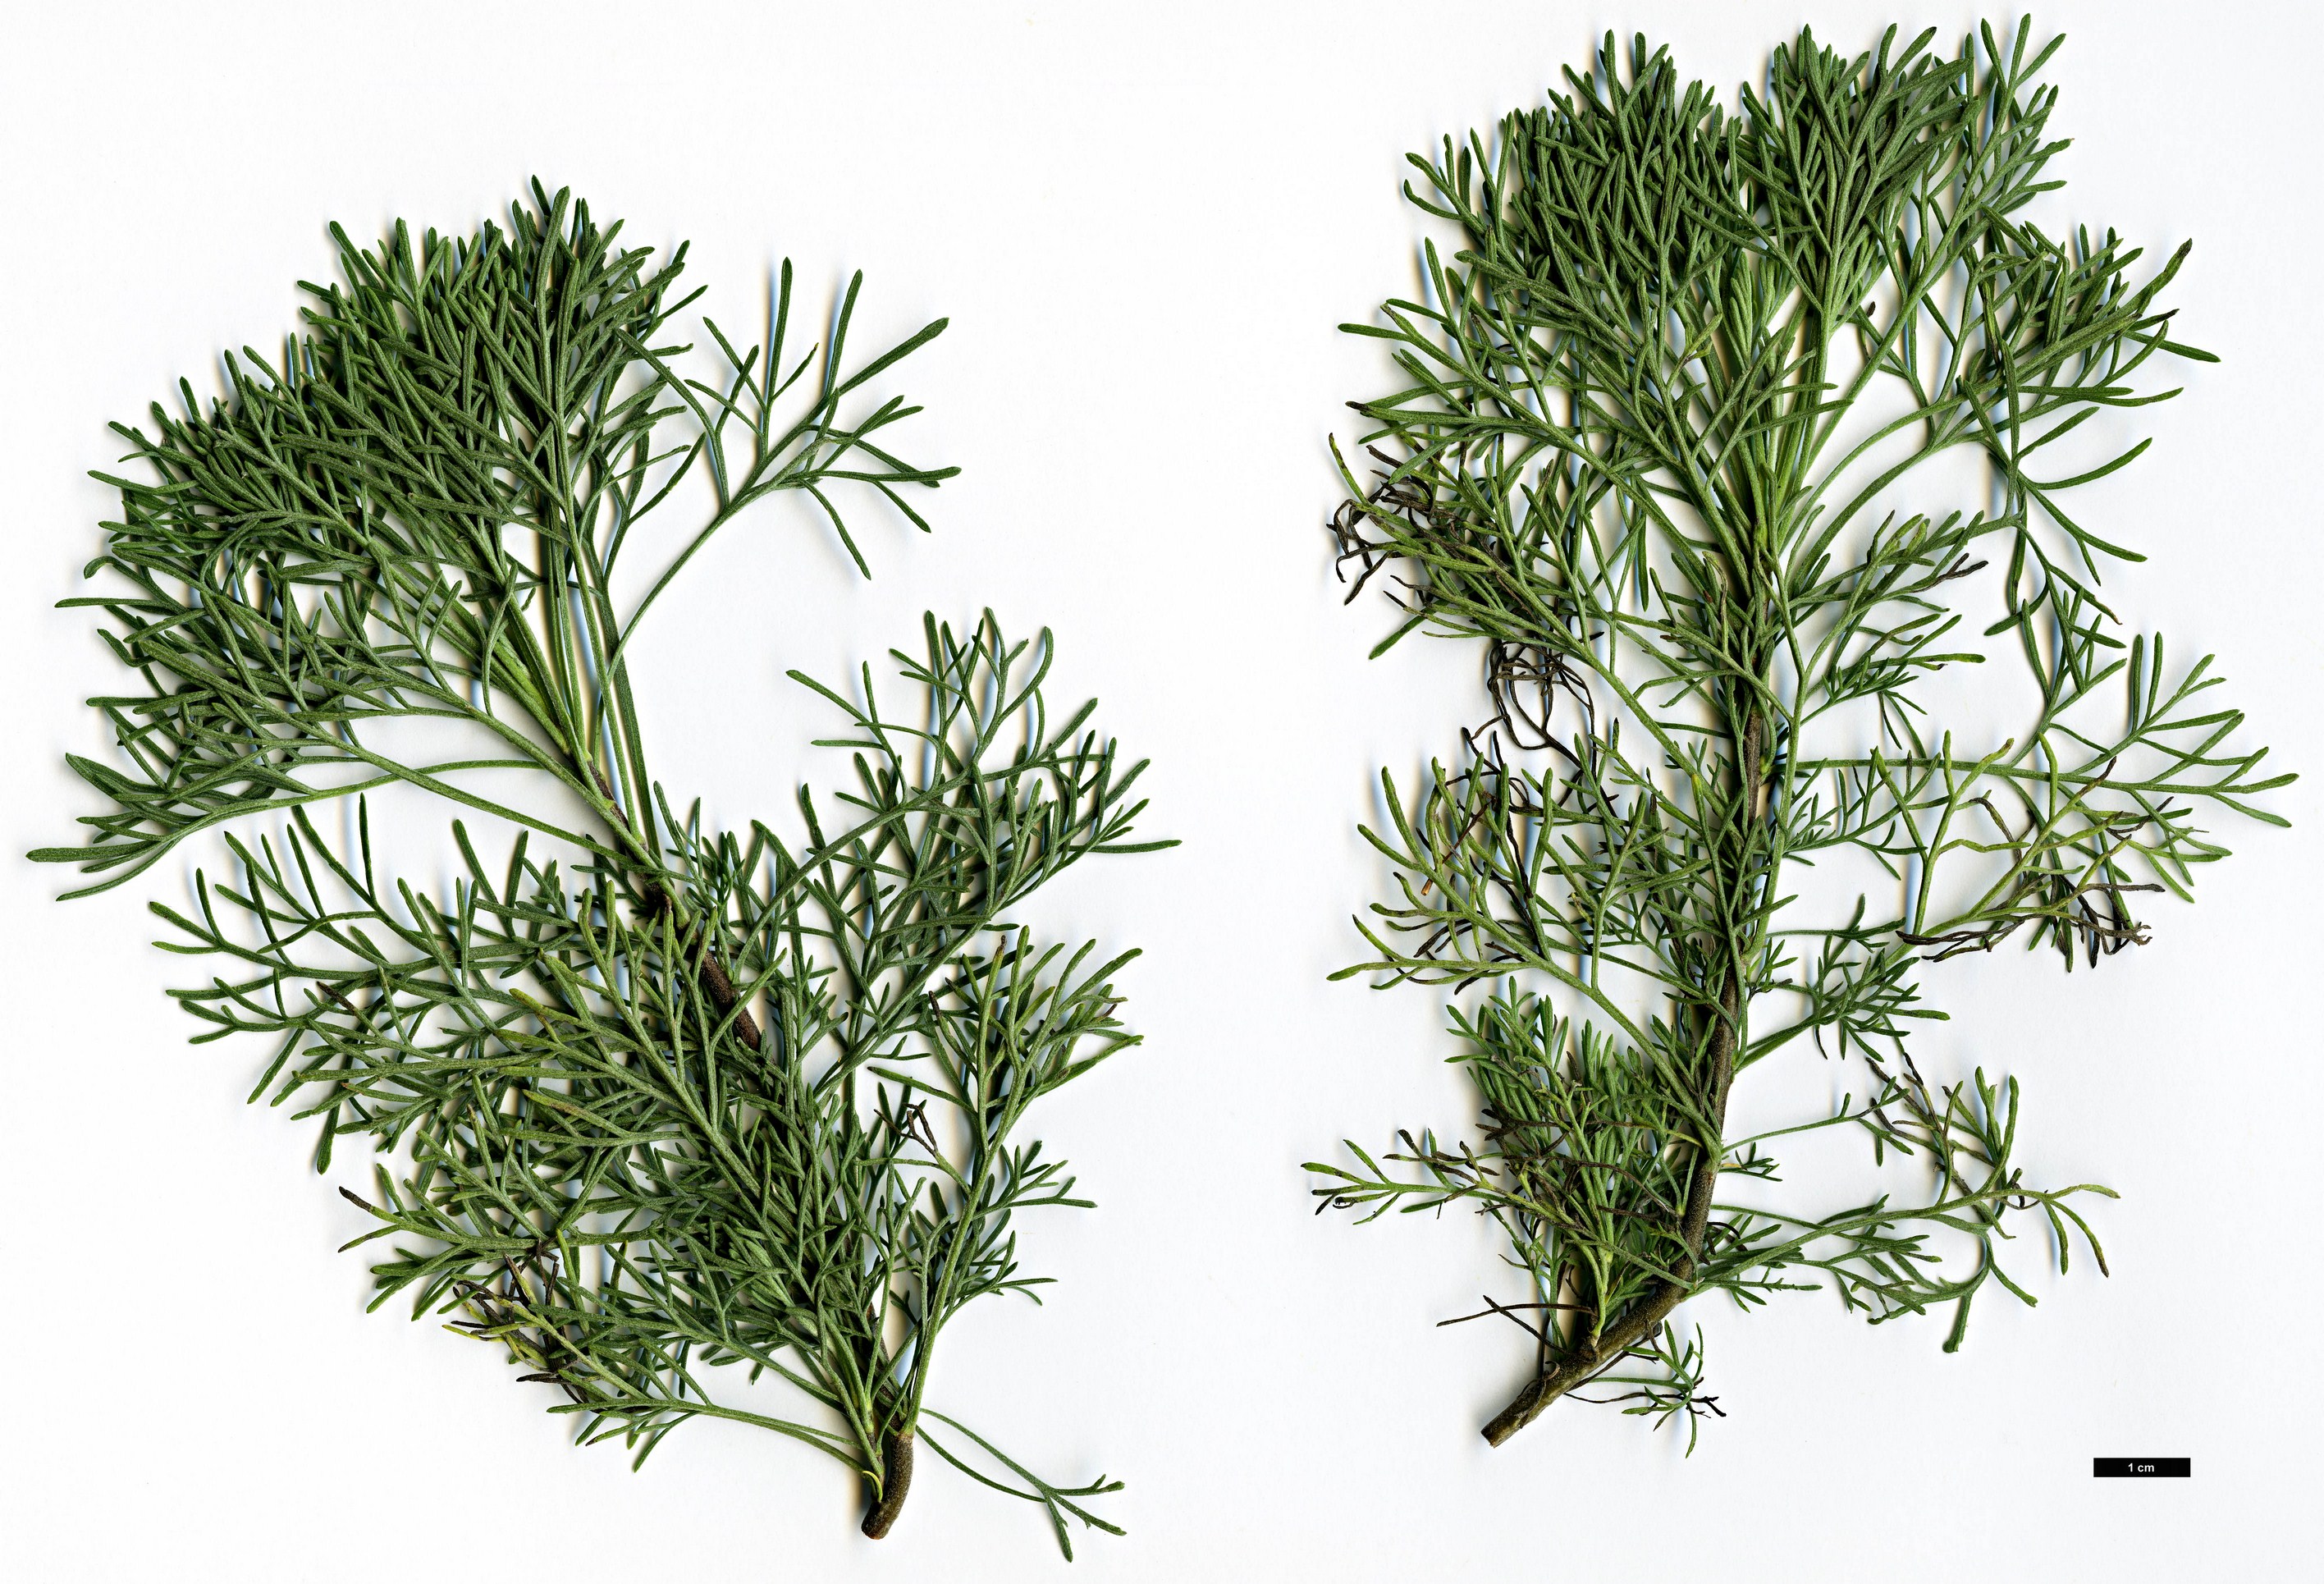 High resolution image: Family: Asteraceae - Genus: Artemisia - Taxon: abrotanum